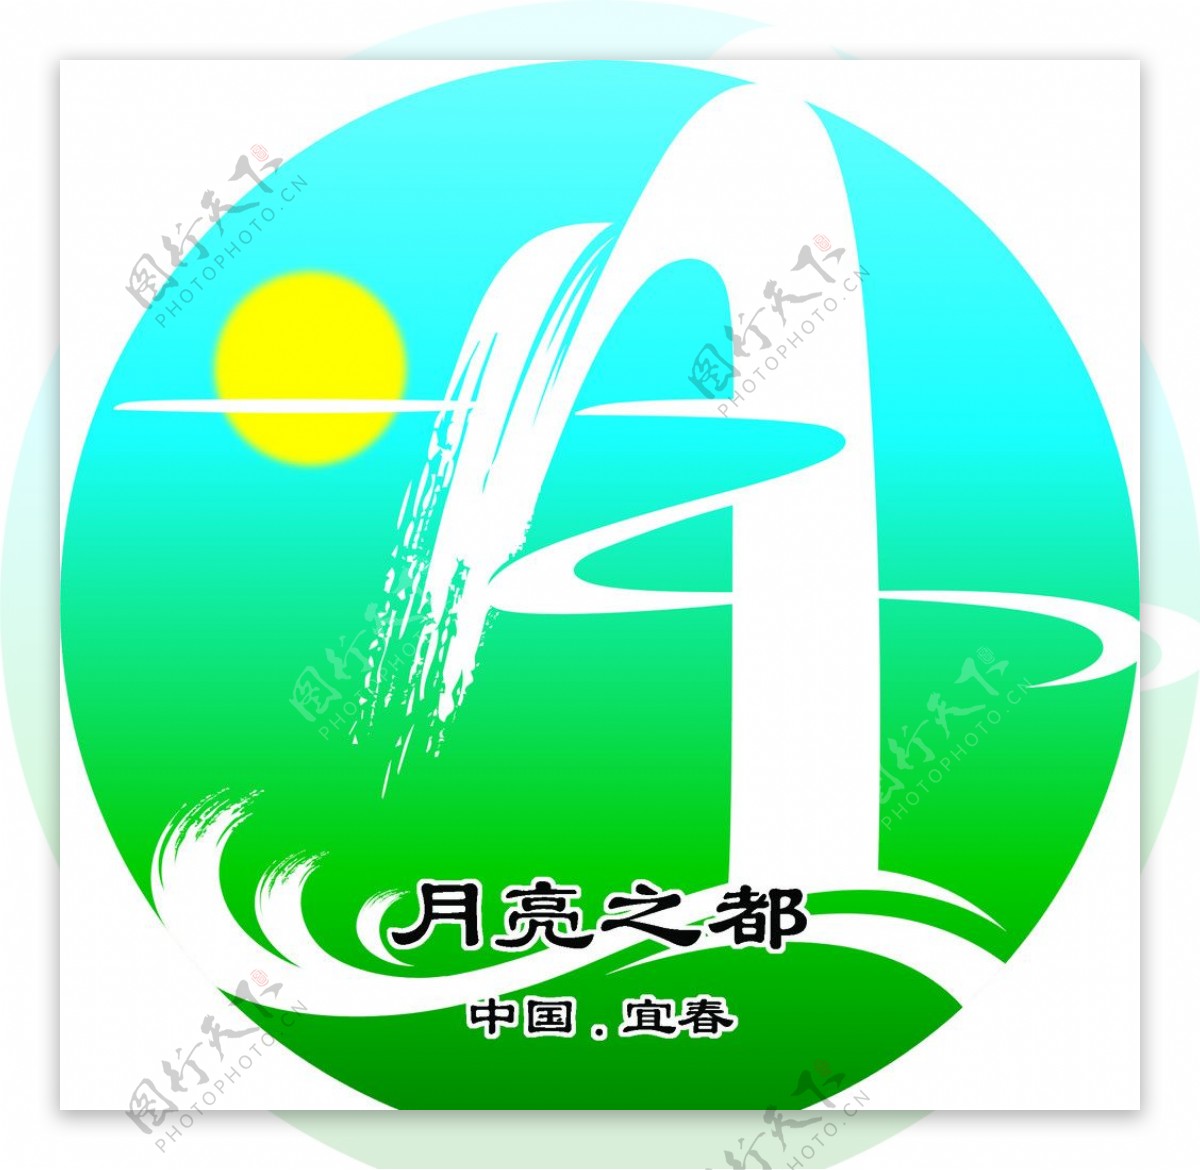 江西宜春月亮文化节标志图片